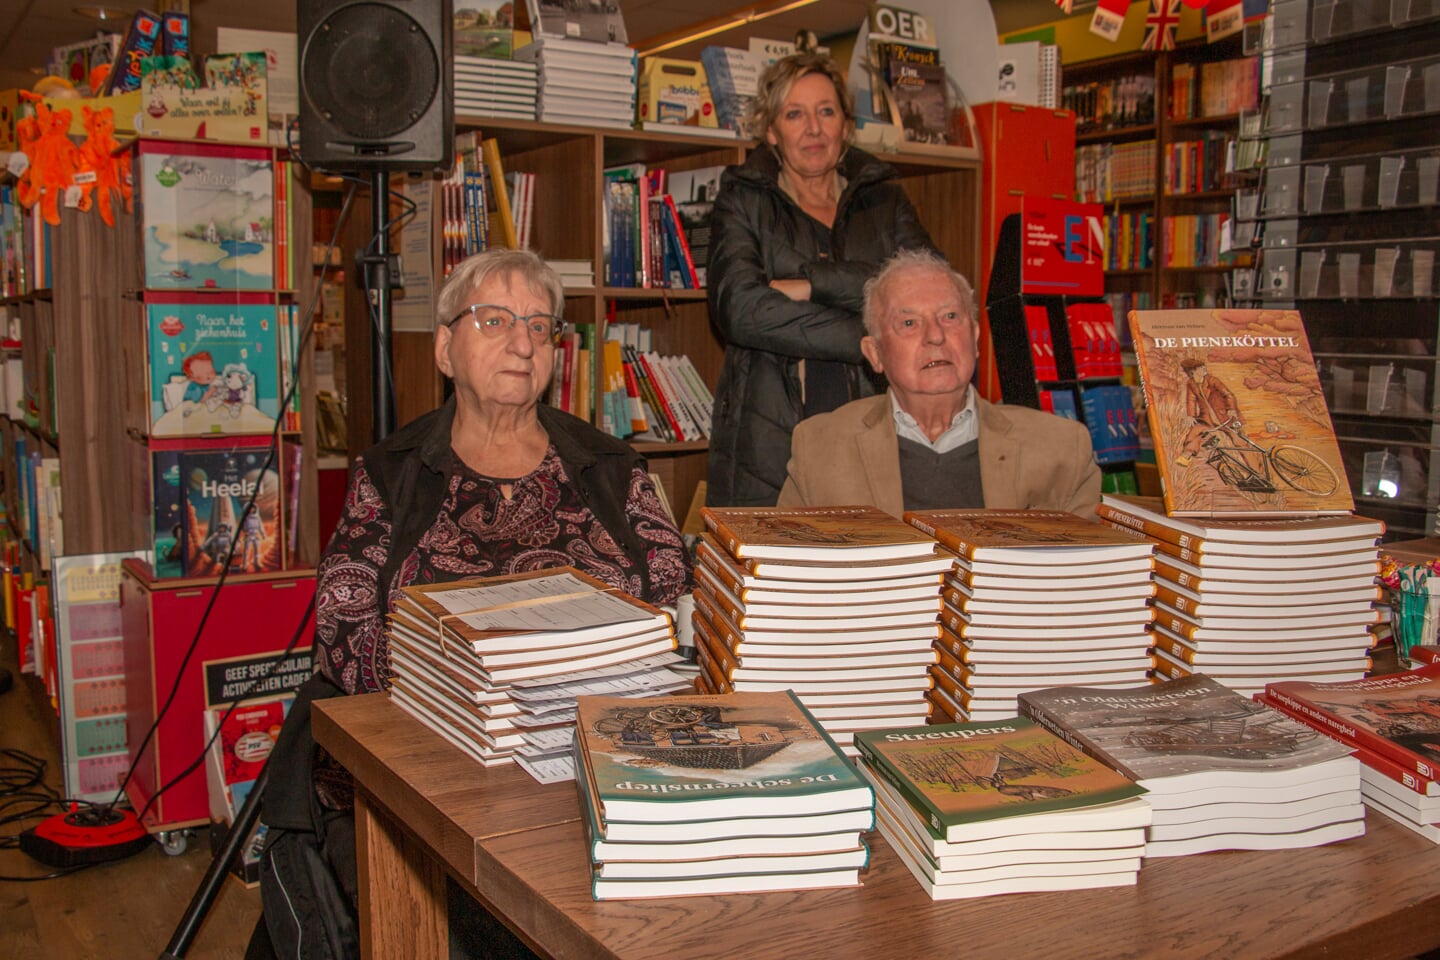 Tante Rikie en Theo Roes bij de boeken van Herman van Velzen, klaar om te signeren. Foto: Liesbeth Spaansen